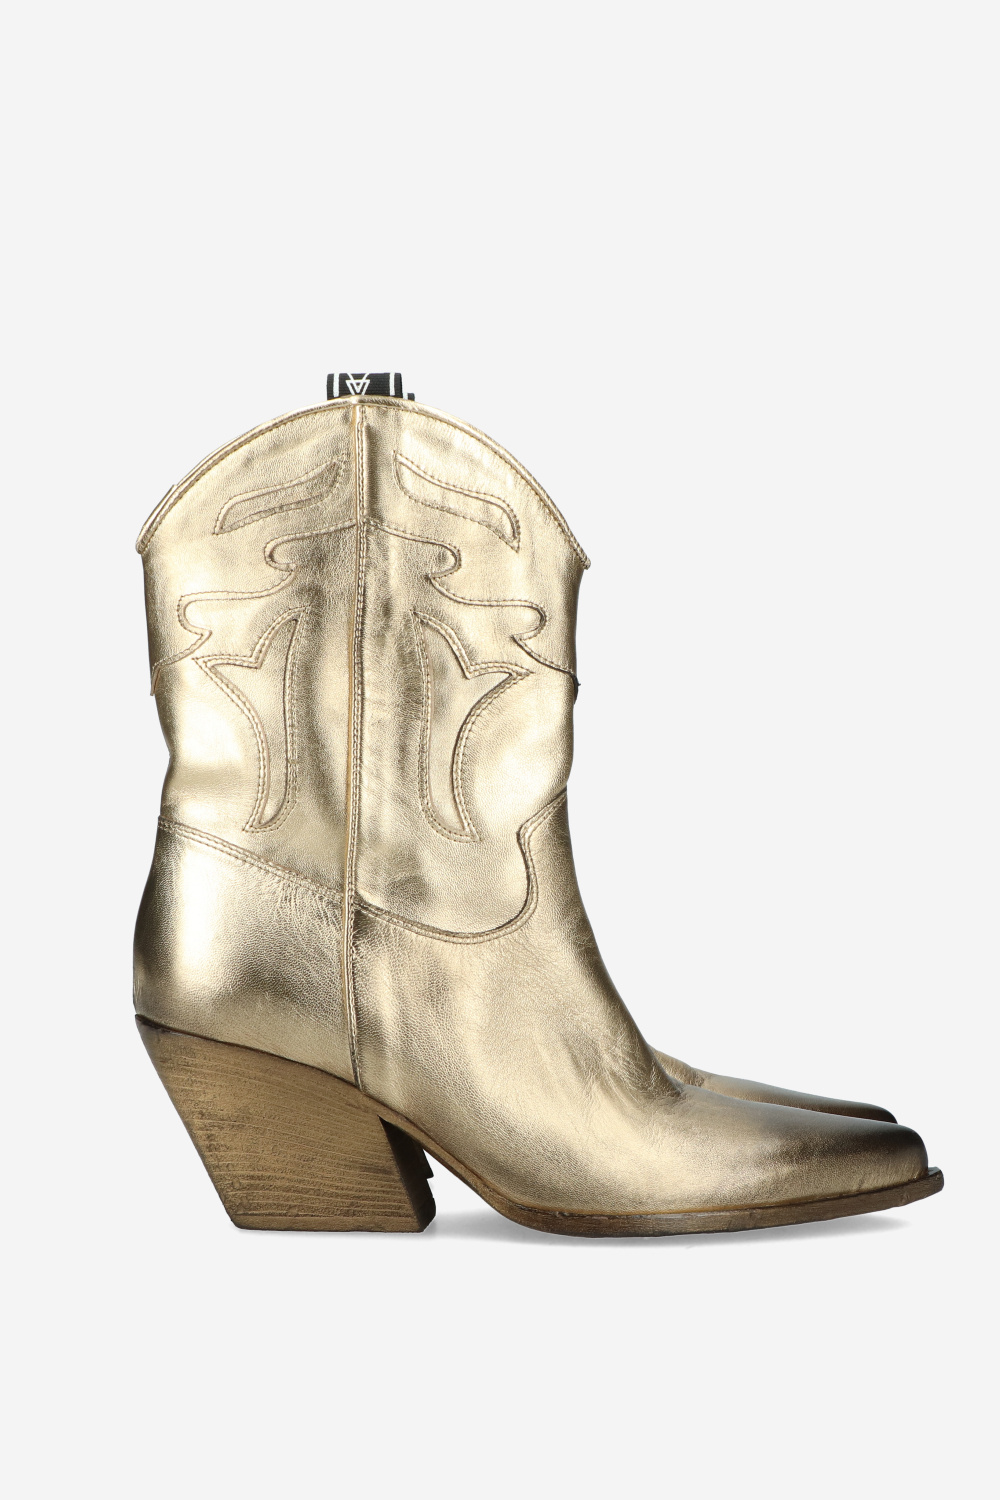 Elena Iachi Boots Gold